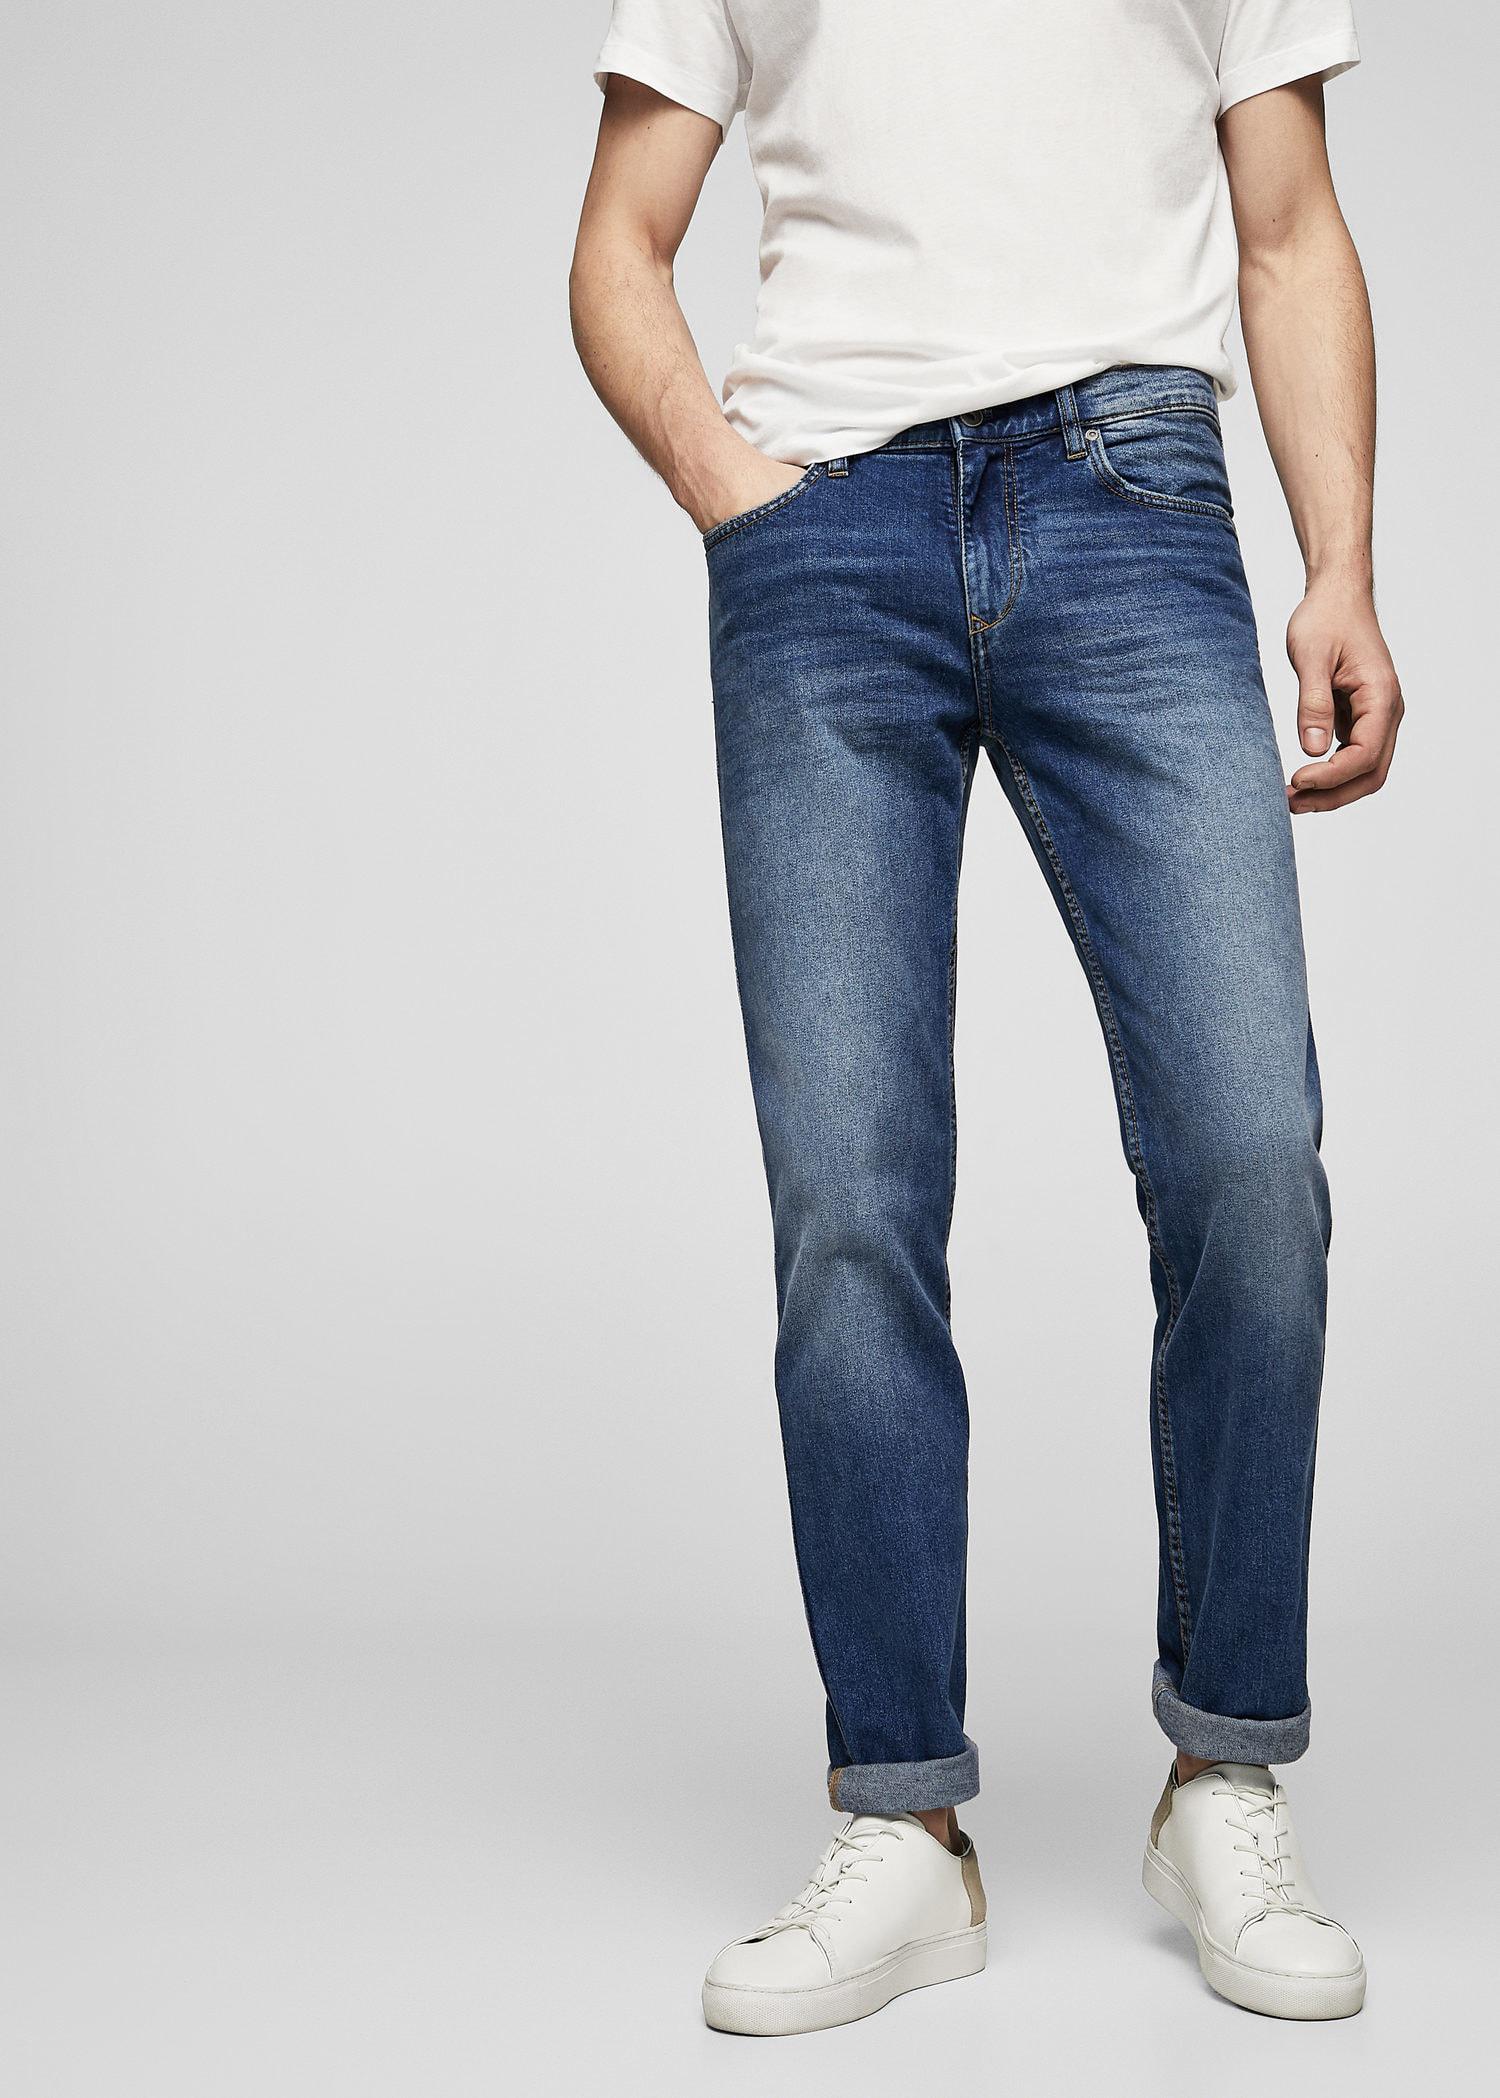 Lyst - Mango Jeans in Blue for Men